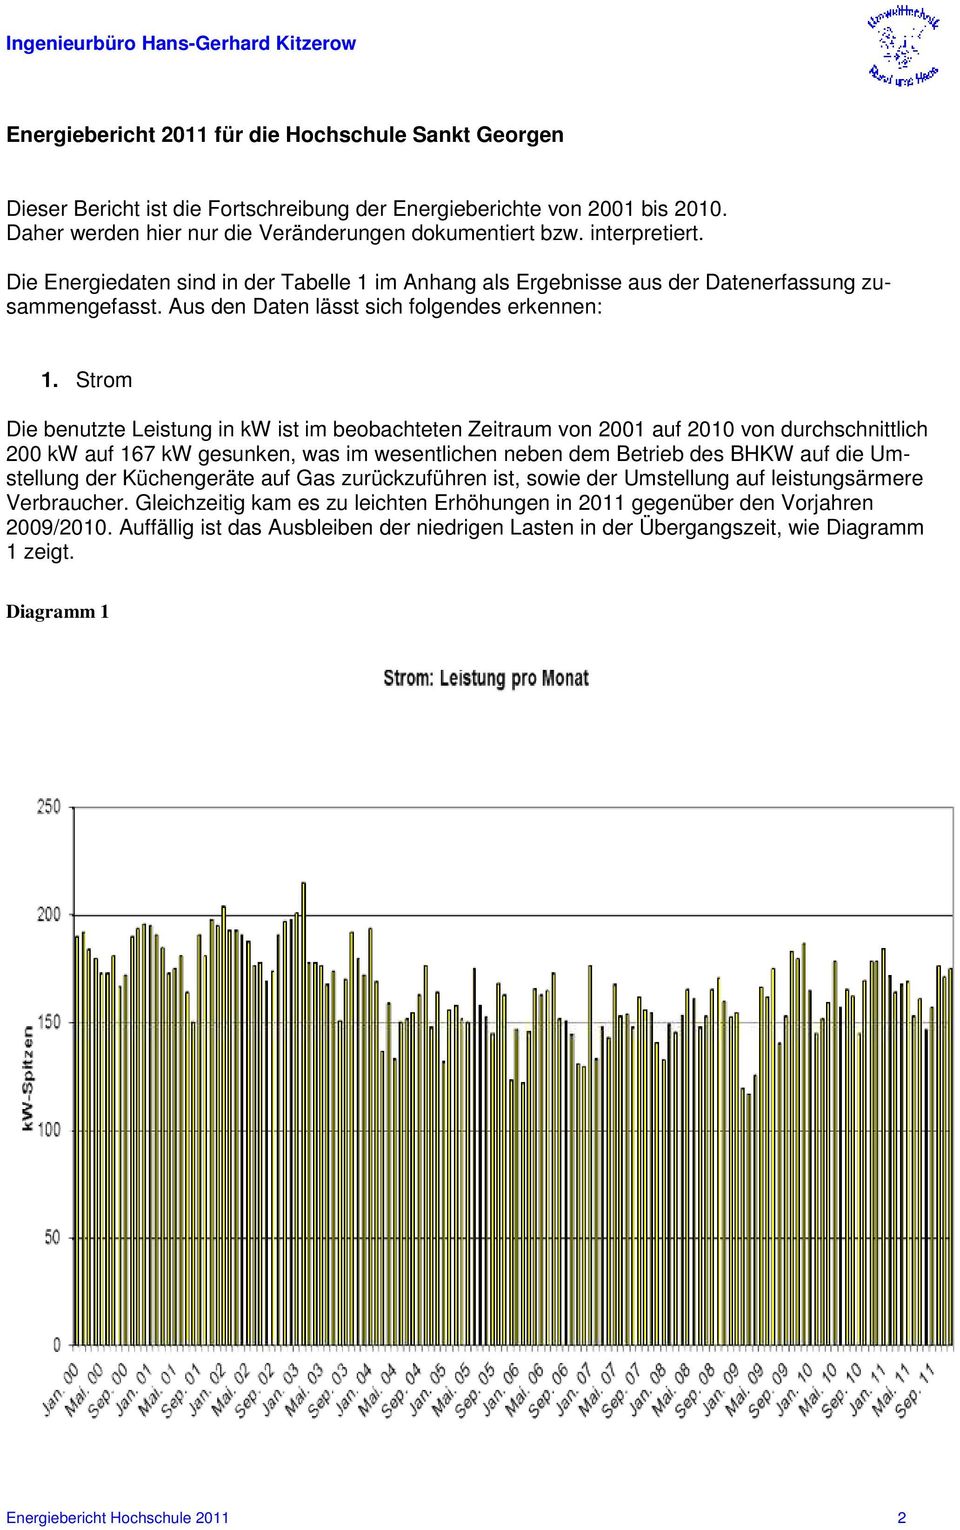 Strom Die benutzte Leistung in kw ist im beobachteten Zeitraum von 2001 auf 2010 von durchschnittlich 200 kw auf 167 kw gesunken, was im wesentlichen neben dem Betrieb des BHKW auf die Umstellung der